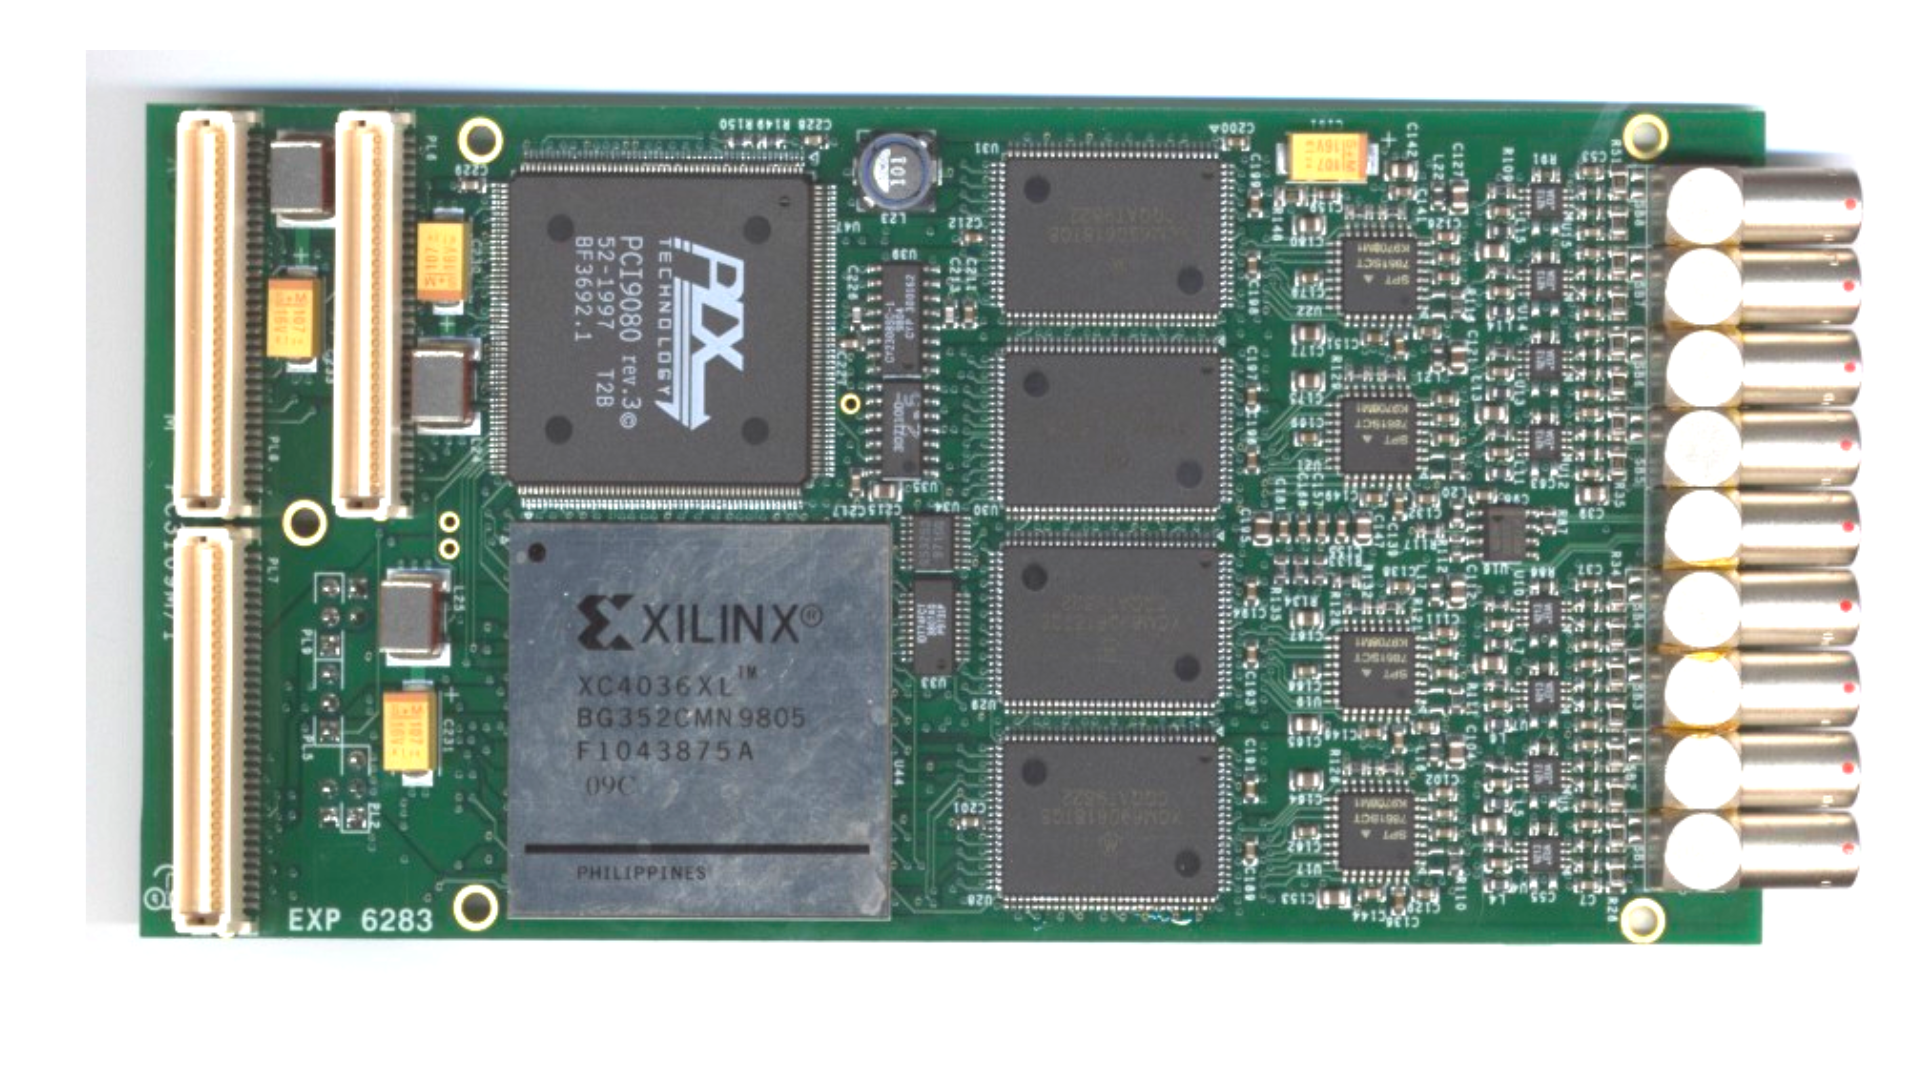 FPGA based board